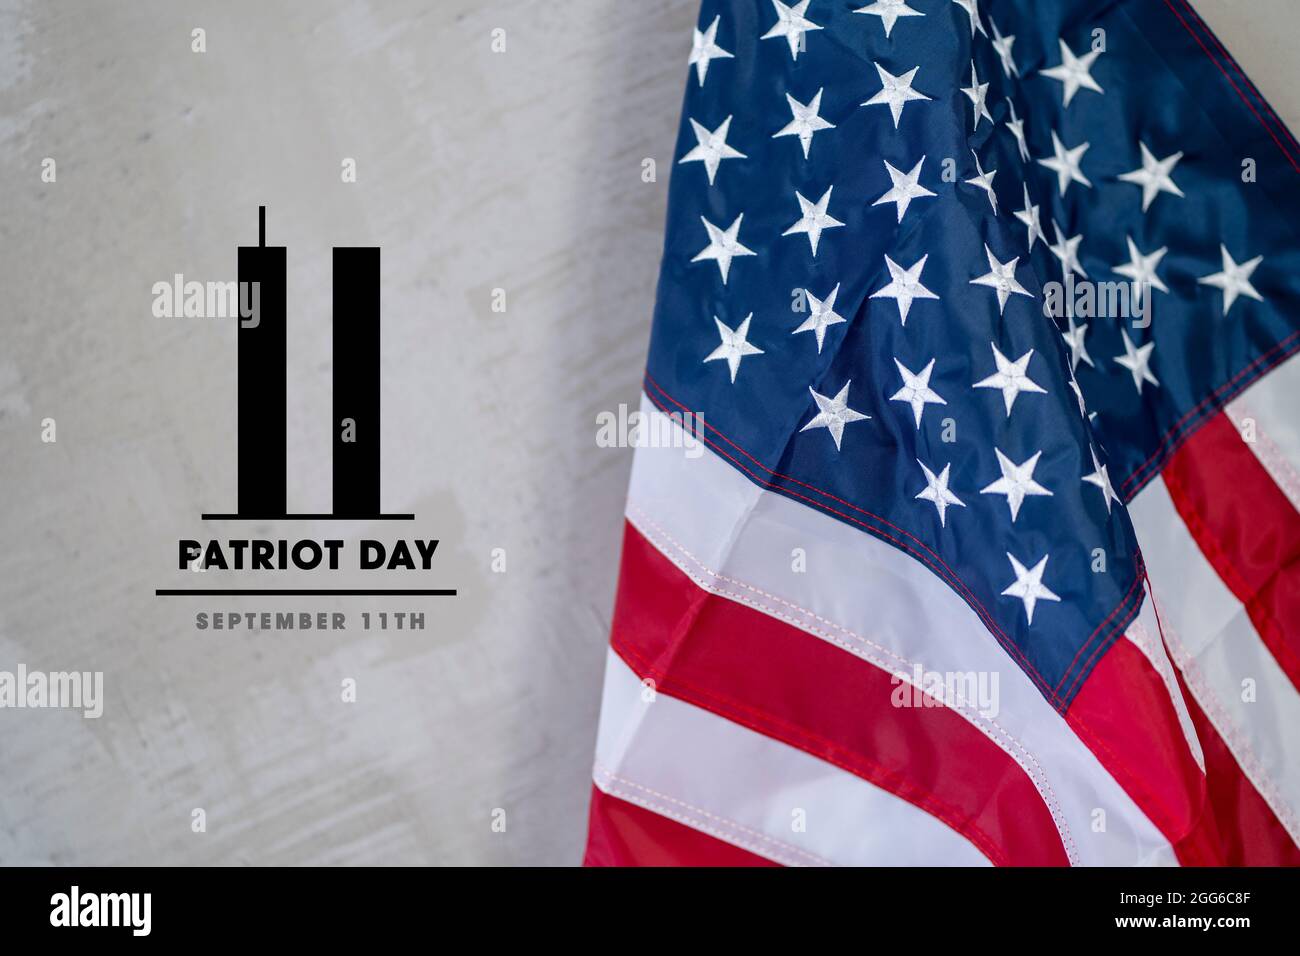 Recuerde siempre el 9 11 de septiembre de 11. Recordando, día Patriot. Las torres gemelas representan el número once. Nunca olvidaremos Foto de stock